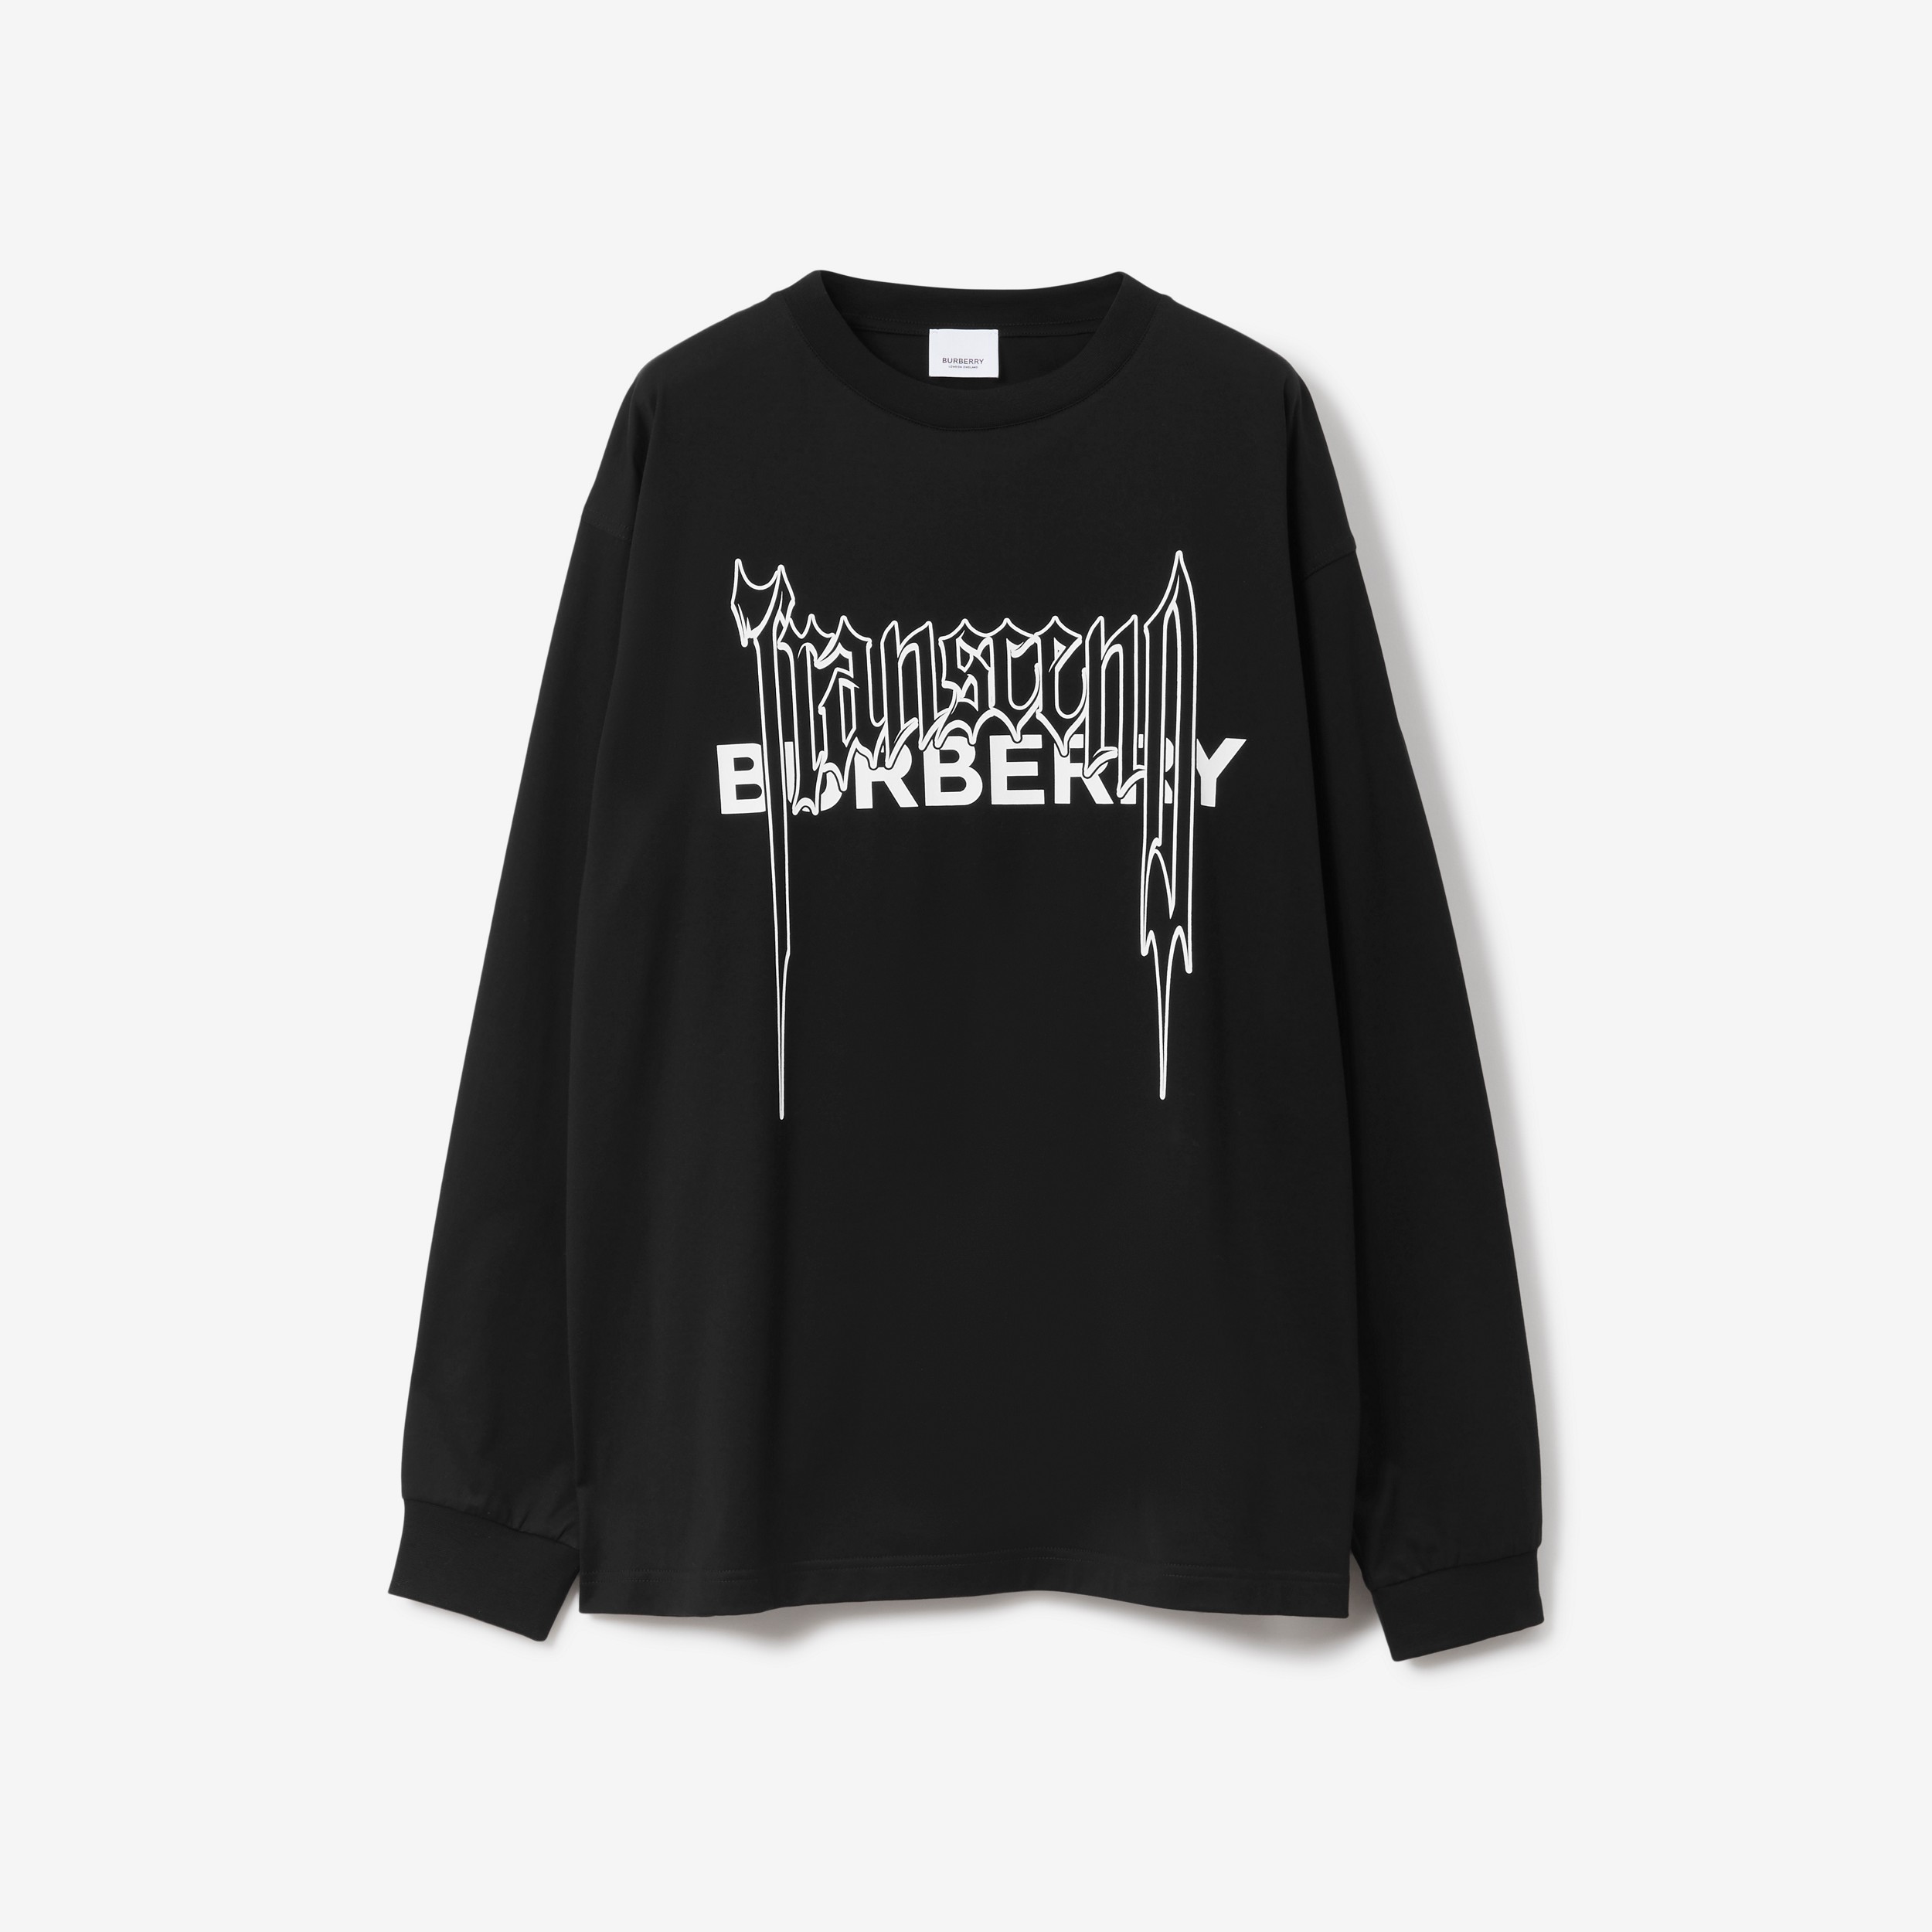 Baumwollsweatshirt mit Montage-Druckmotiv (Schwarz) - Herren | Burberry® - 1